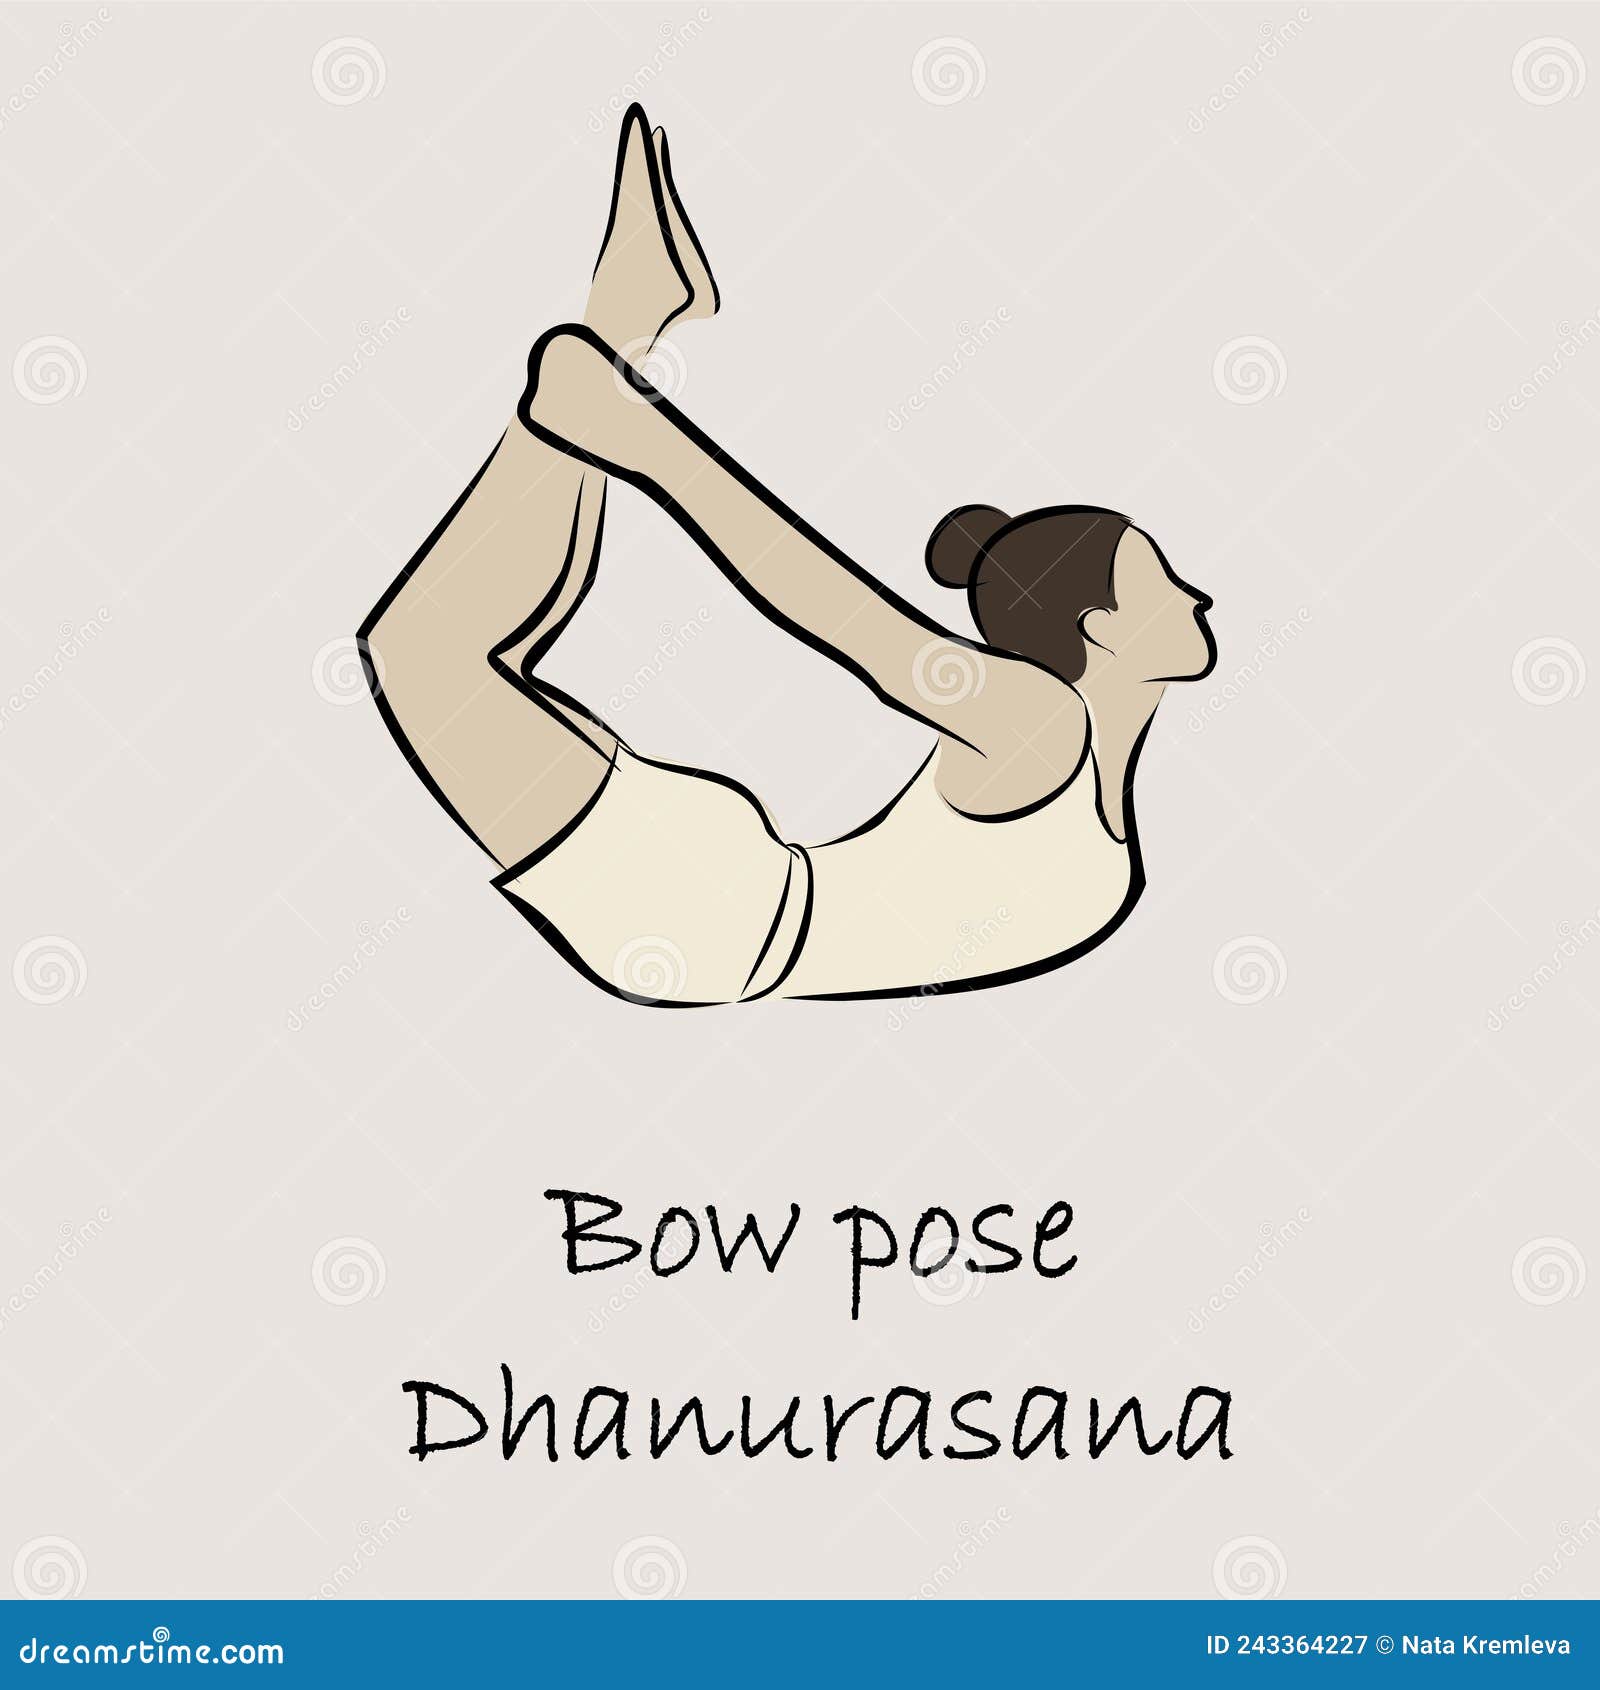 Balance Your Chakras With 7 Easy Yoga Poses and… | Spirituality+Health